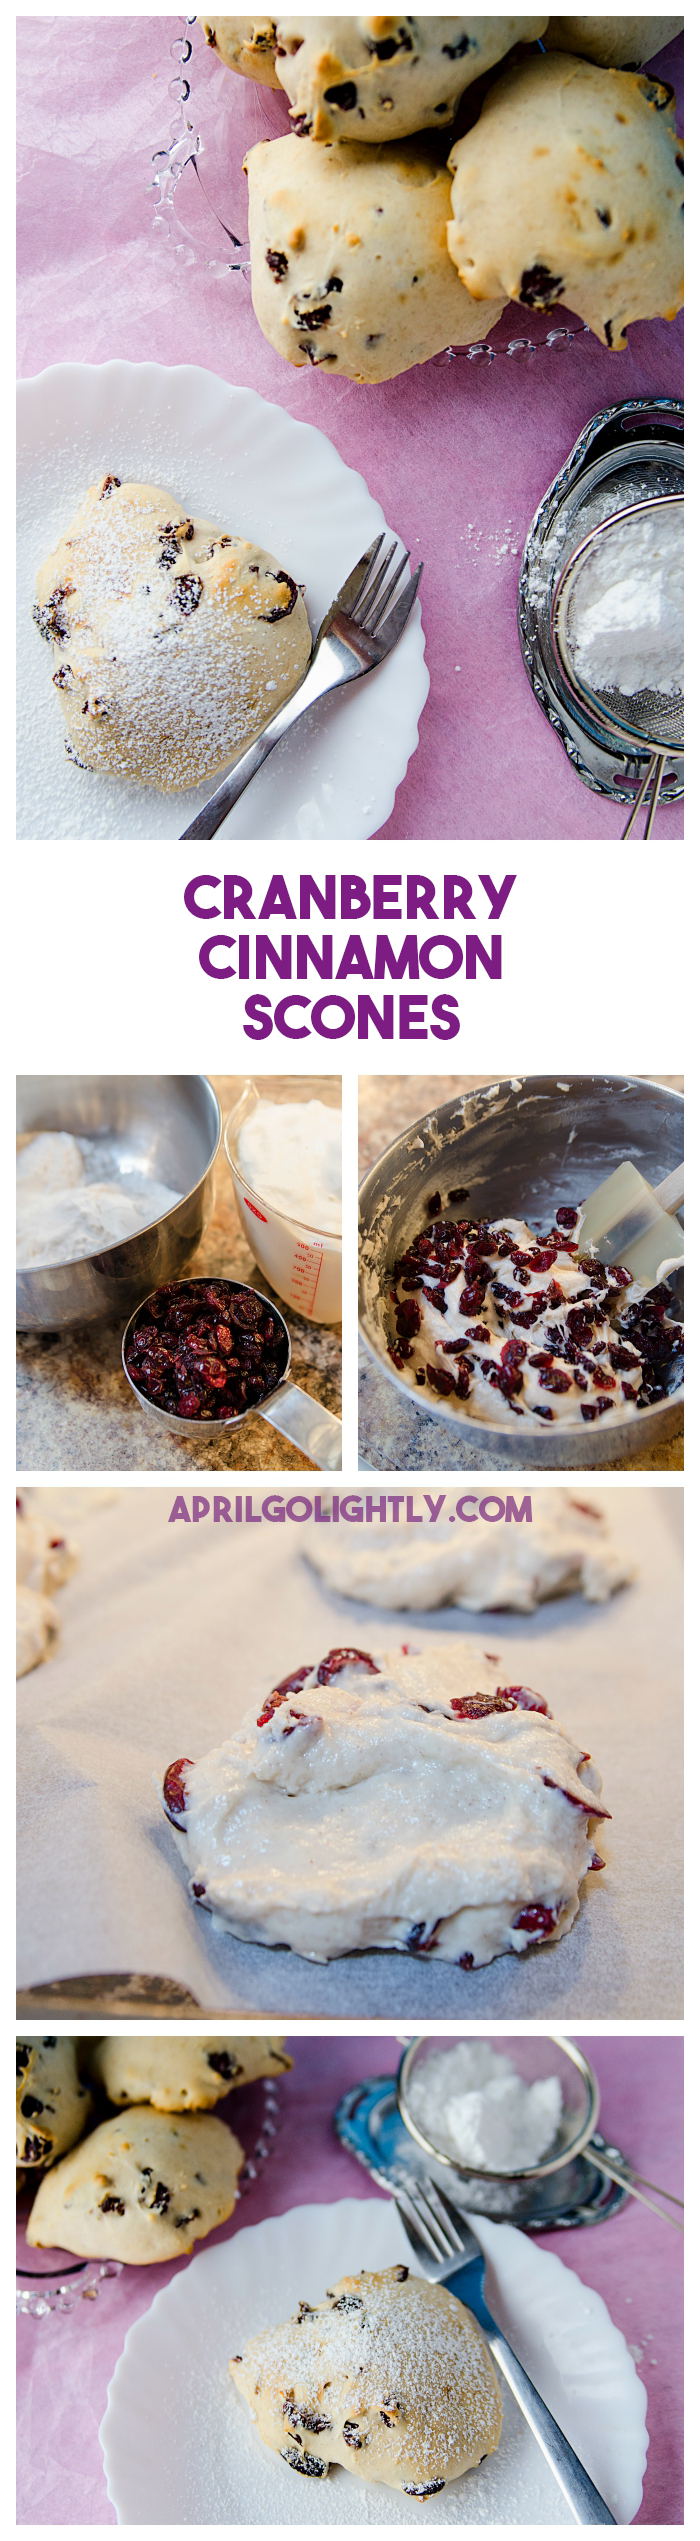 Cranberry-Cinnamon-Scones-Brunch-Recipe